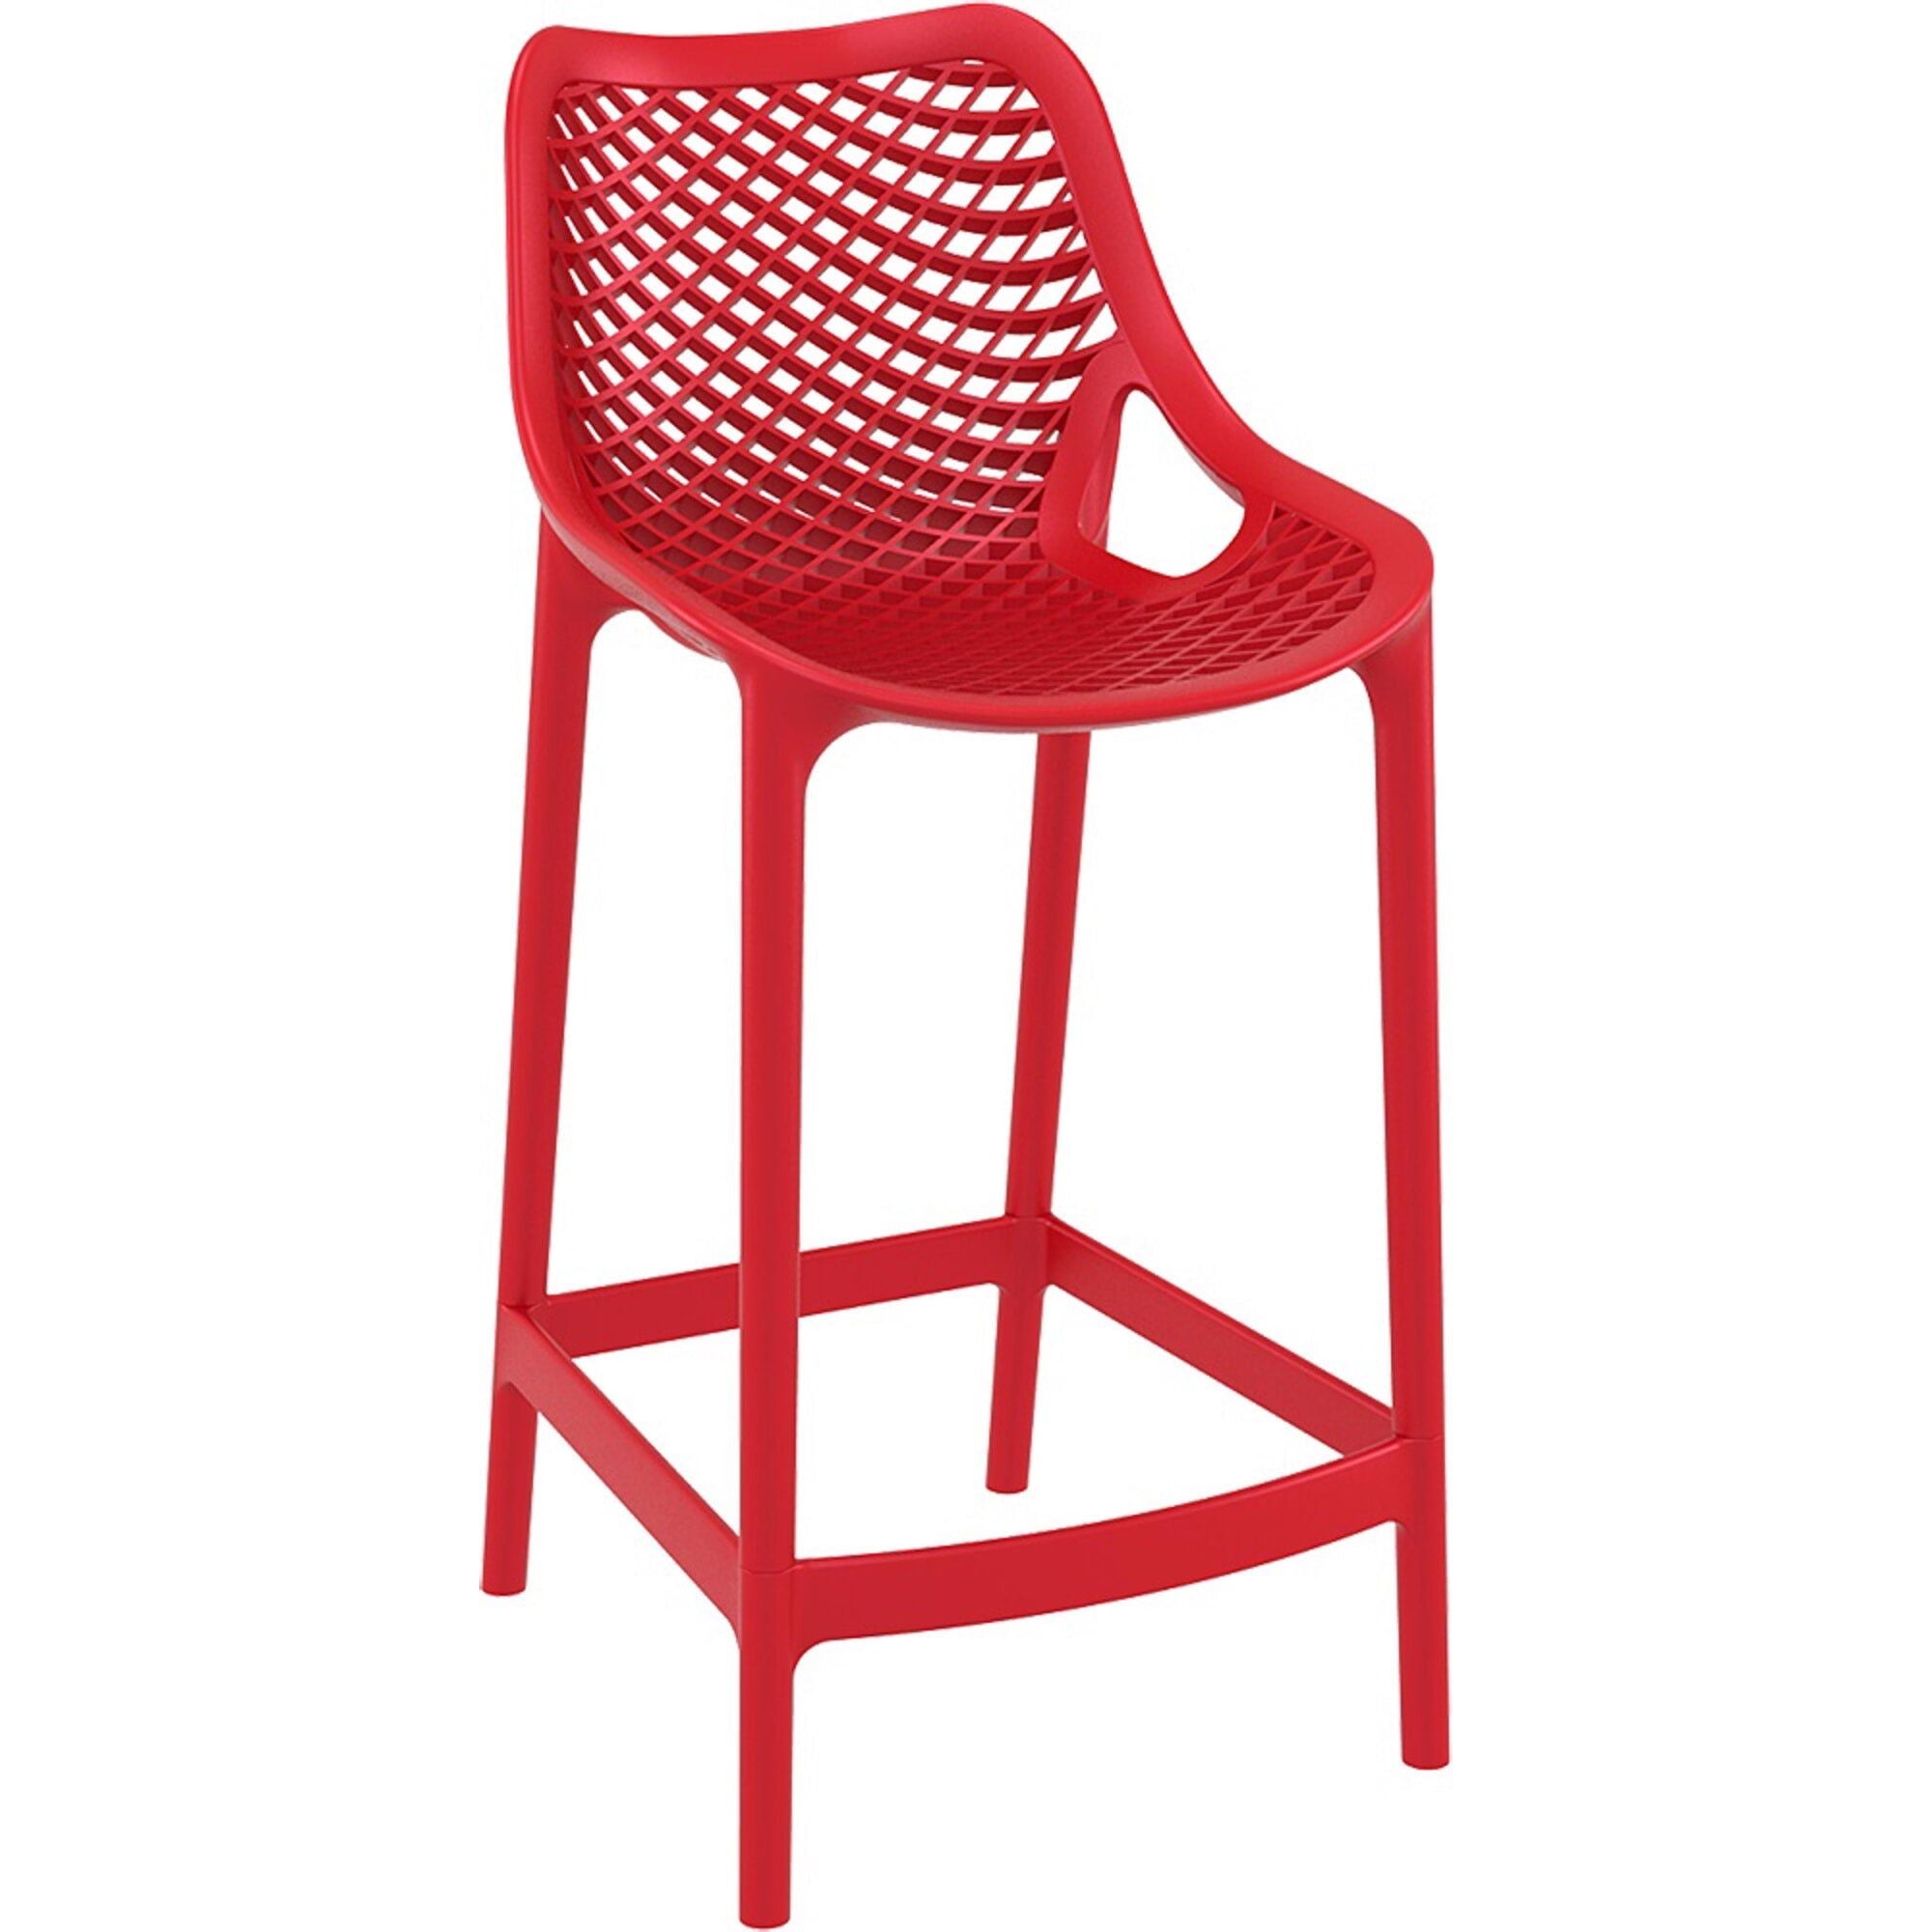 Garbar lattice medium stool inside, red outside